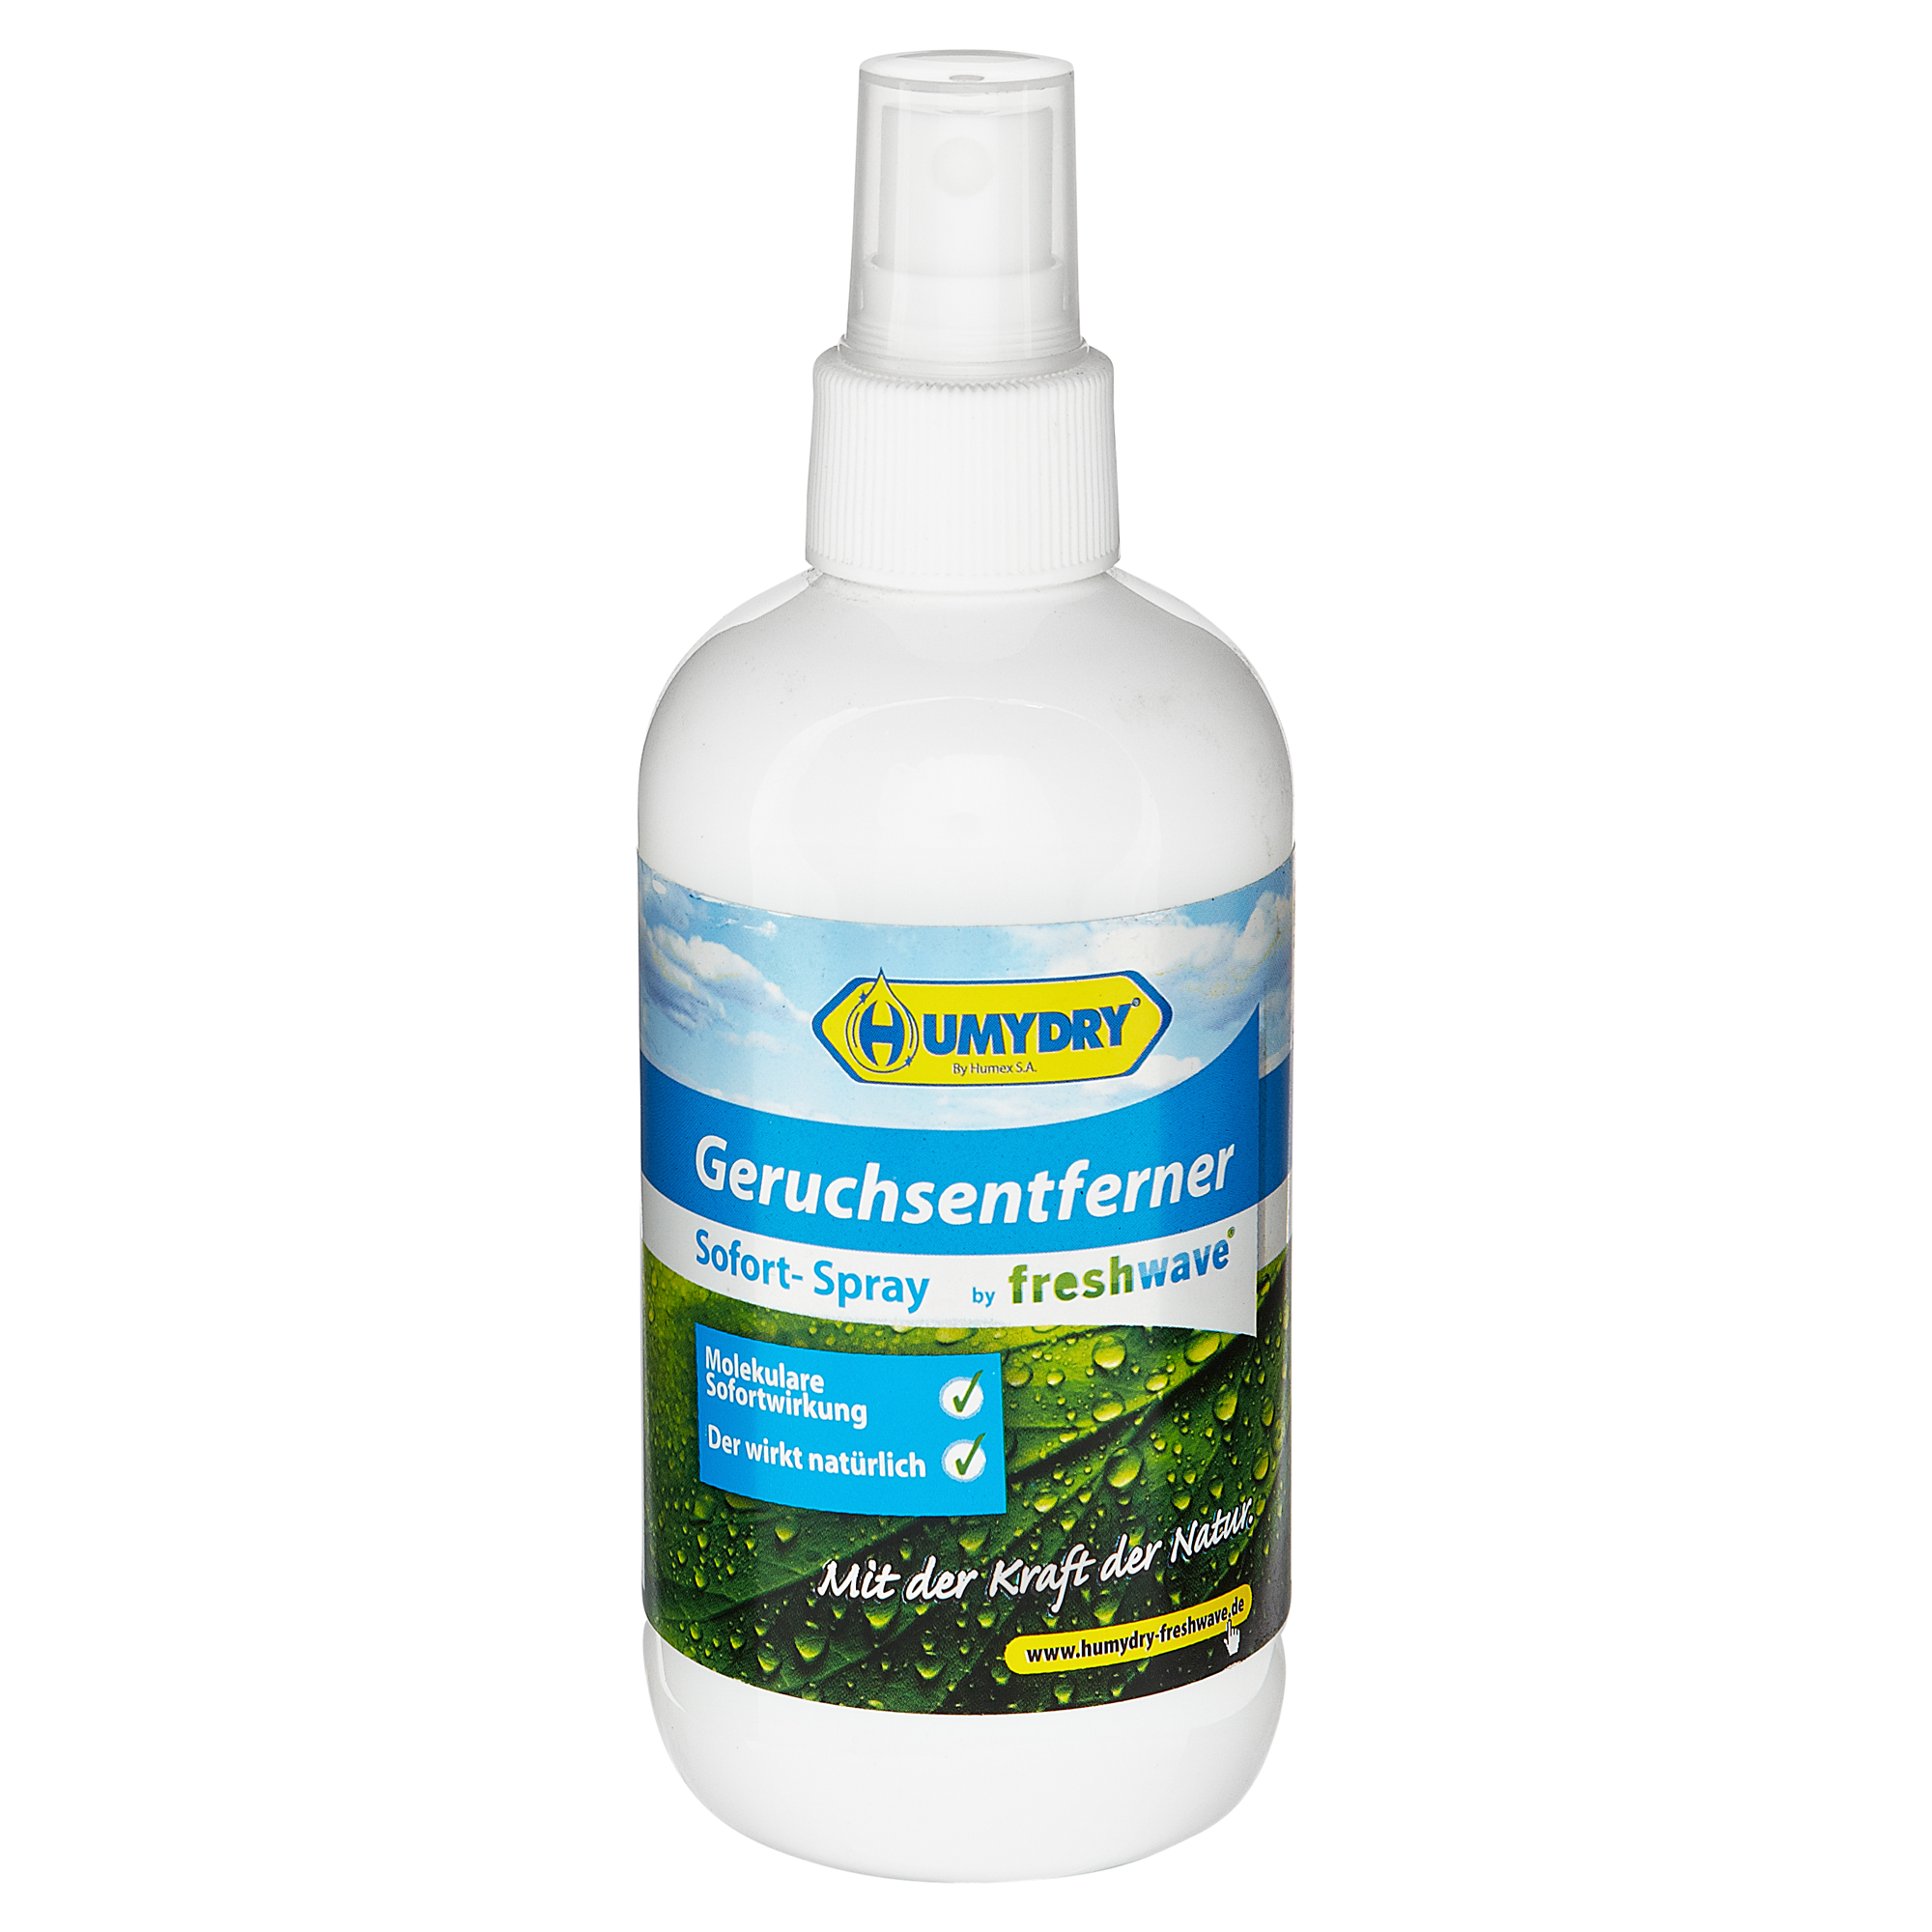 Geruchsentferner-Sofortspray "Freshwave" 250 ml + product picture